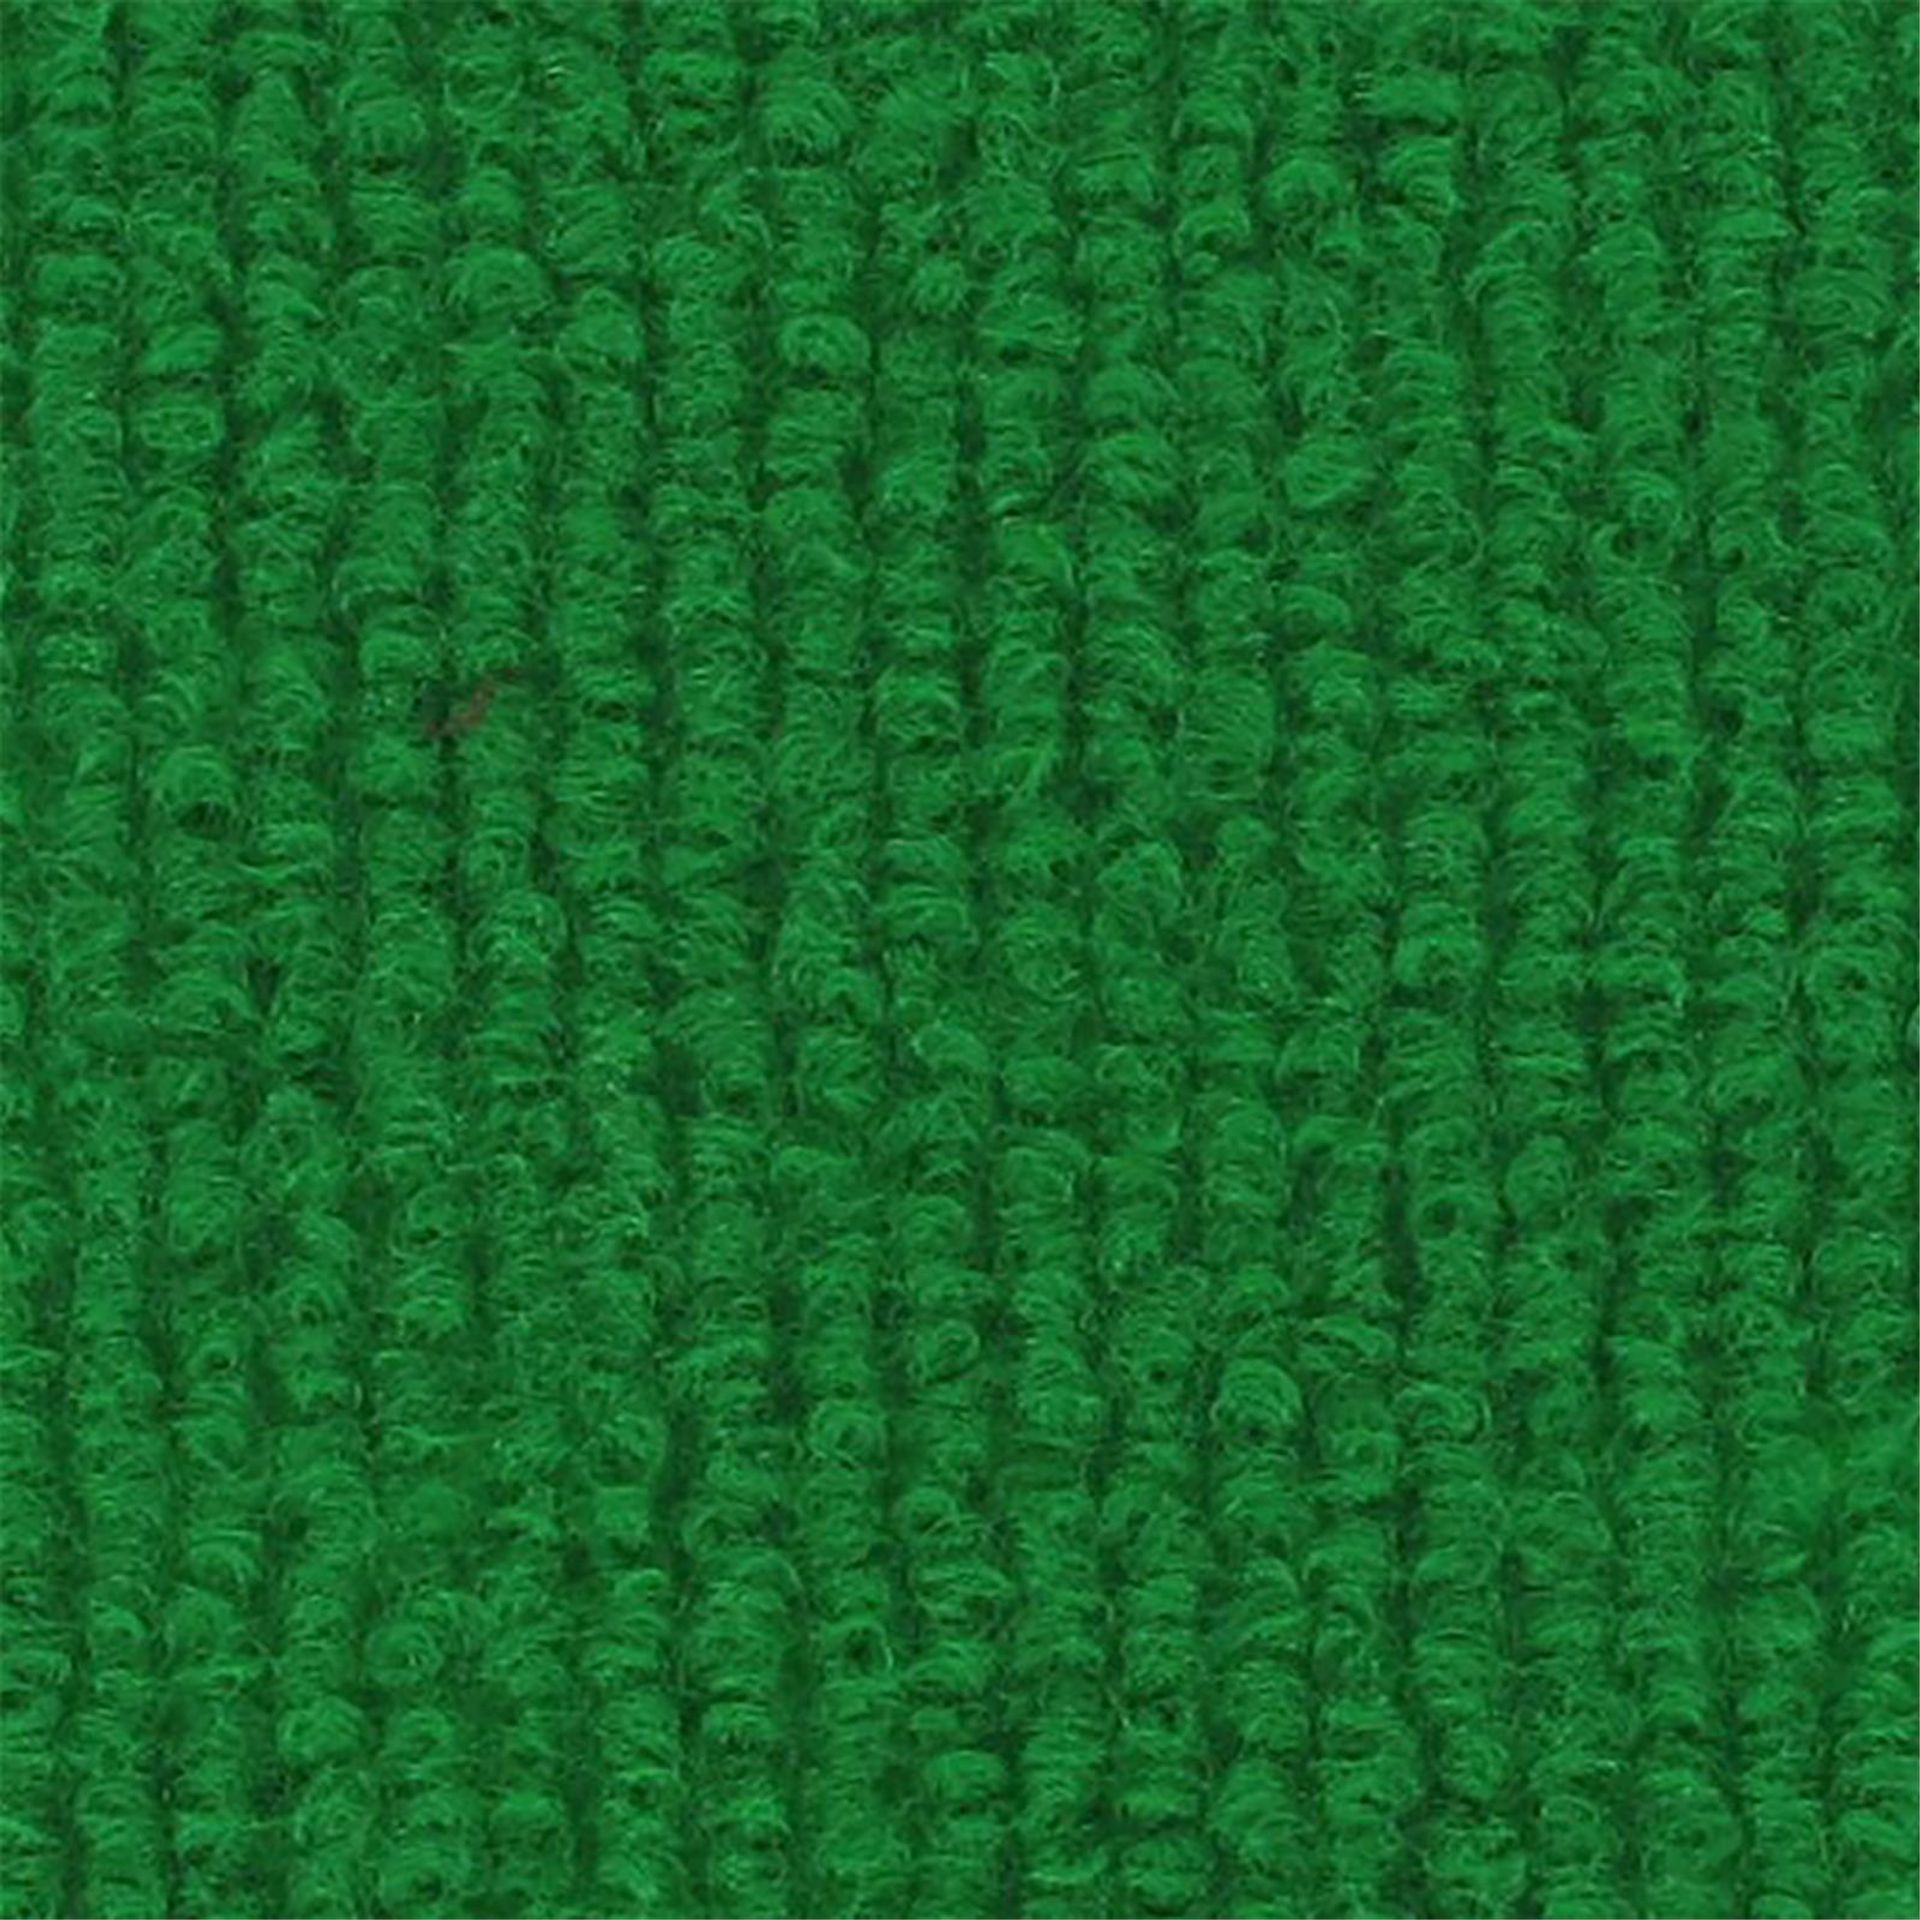 Messeboden Rips-Nadelvlies EXPOLINE Grass Green 0041 100qm ohne Schutzfolie - Rollenbreite 200 cm